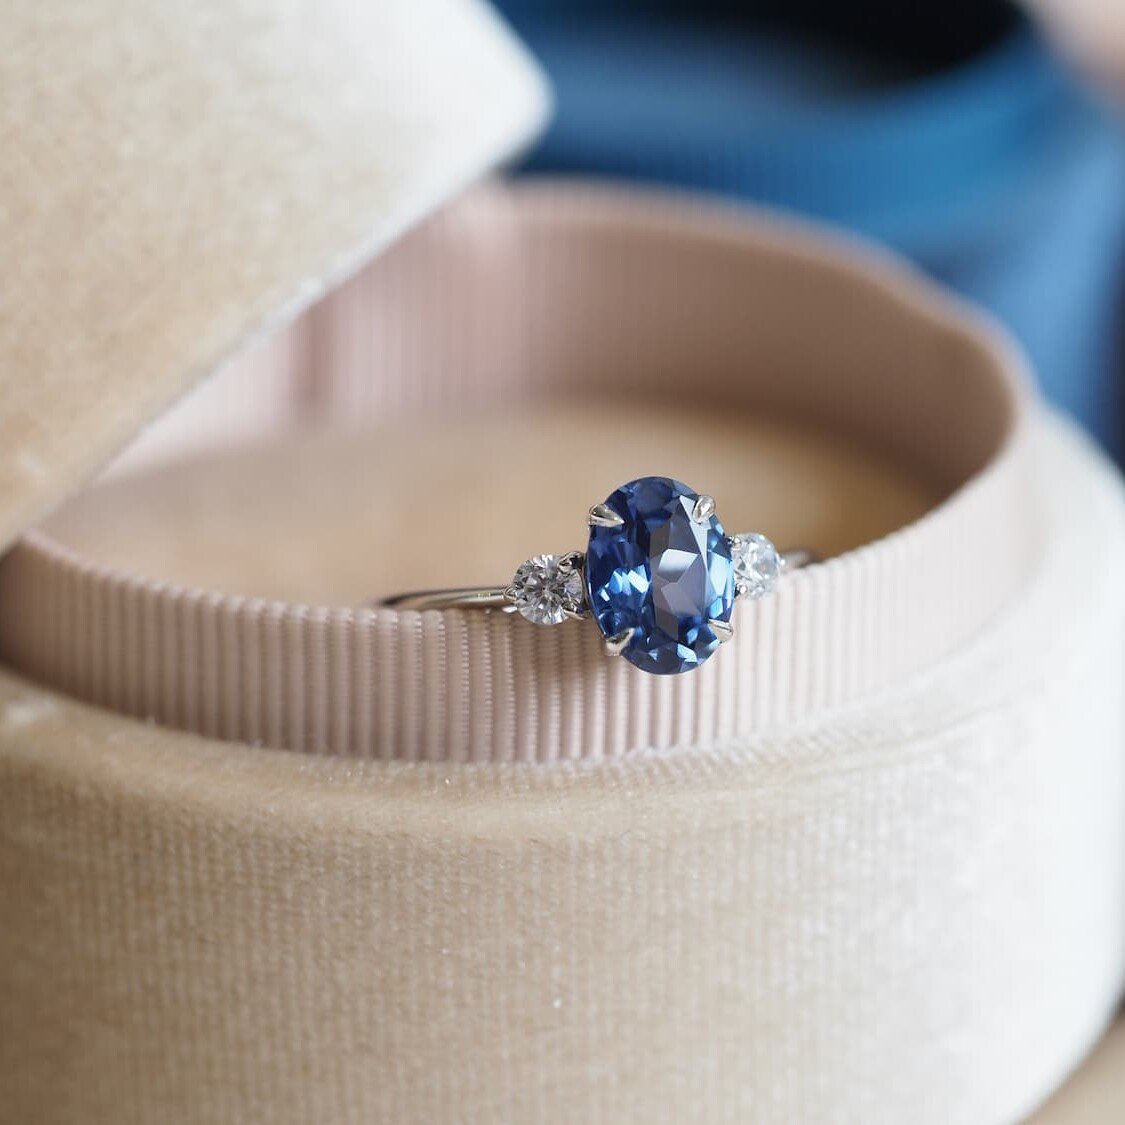 Oval blue sapphire ring kept in velvet box